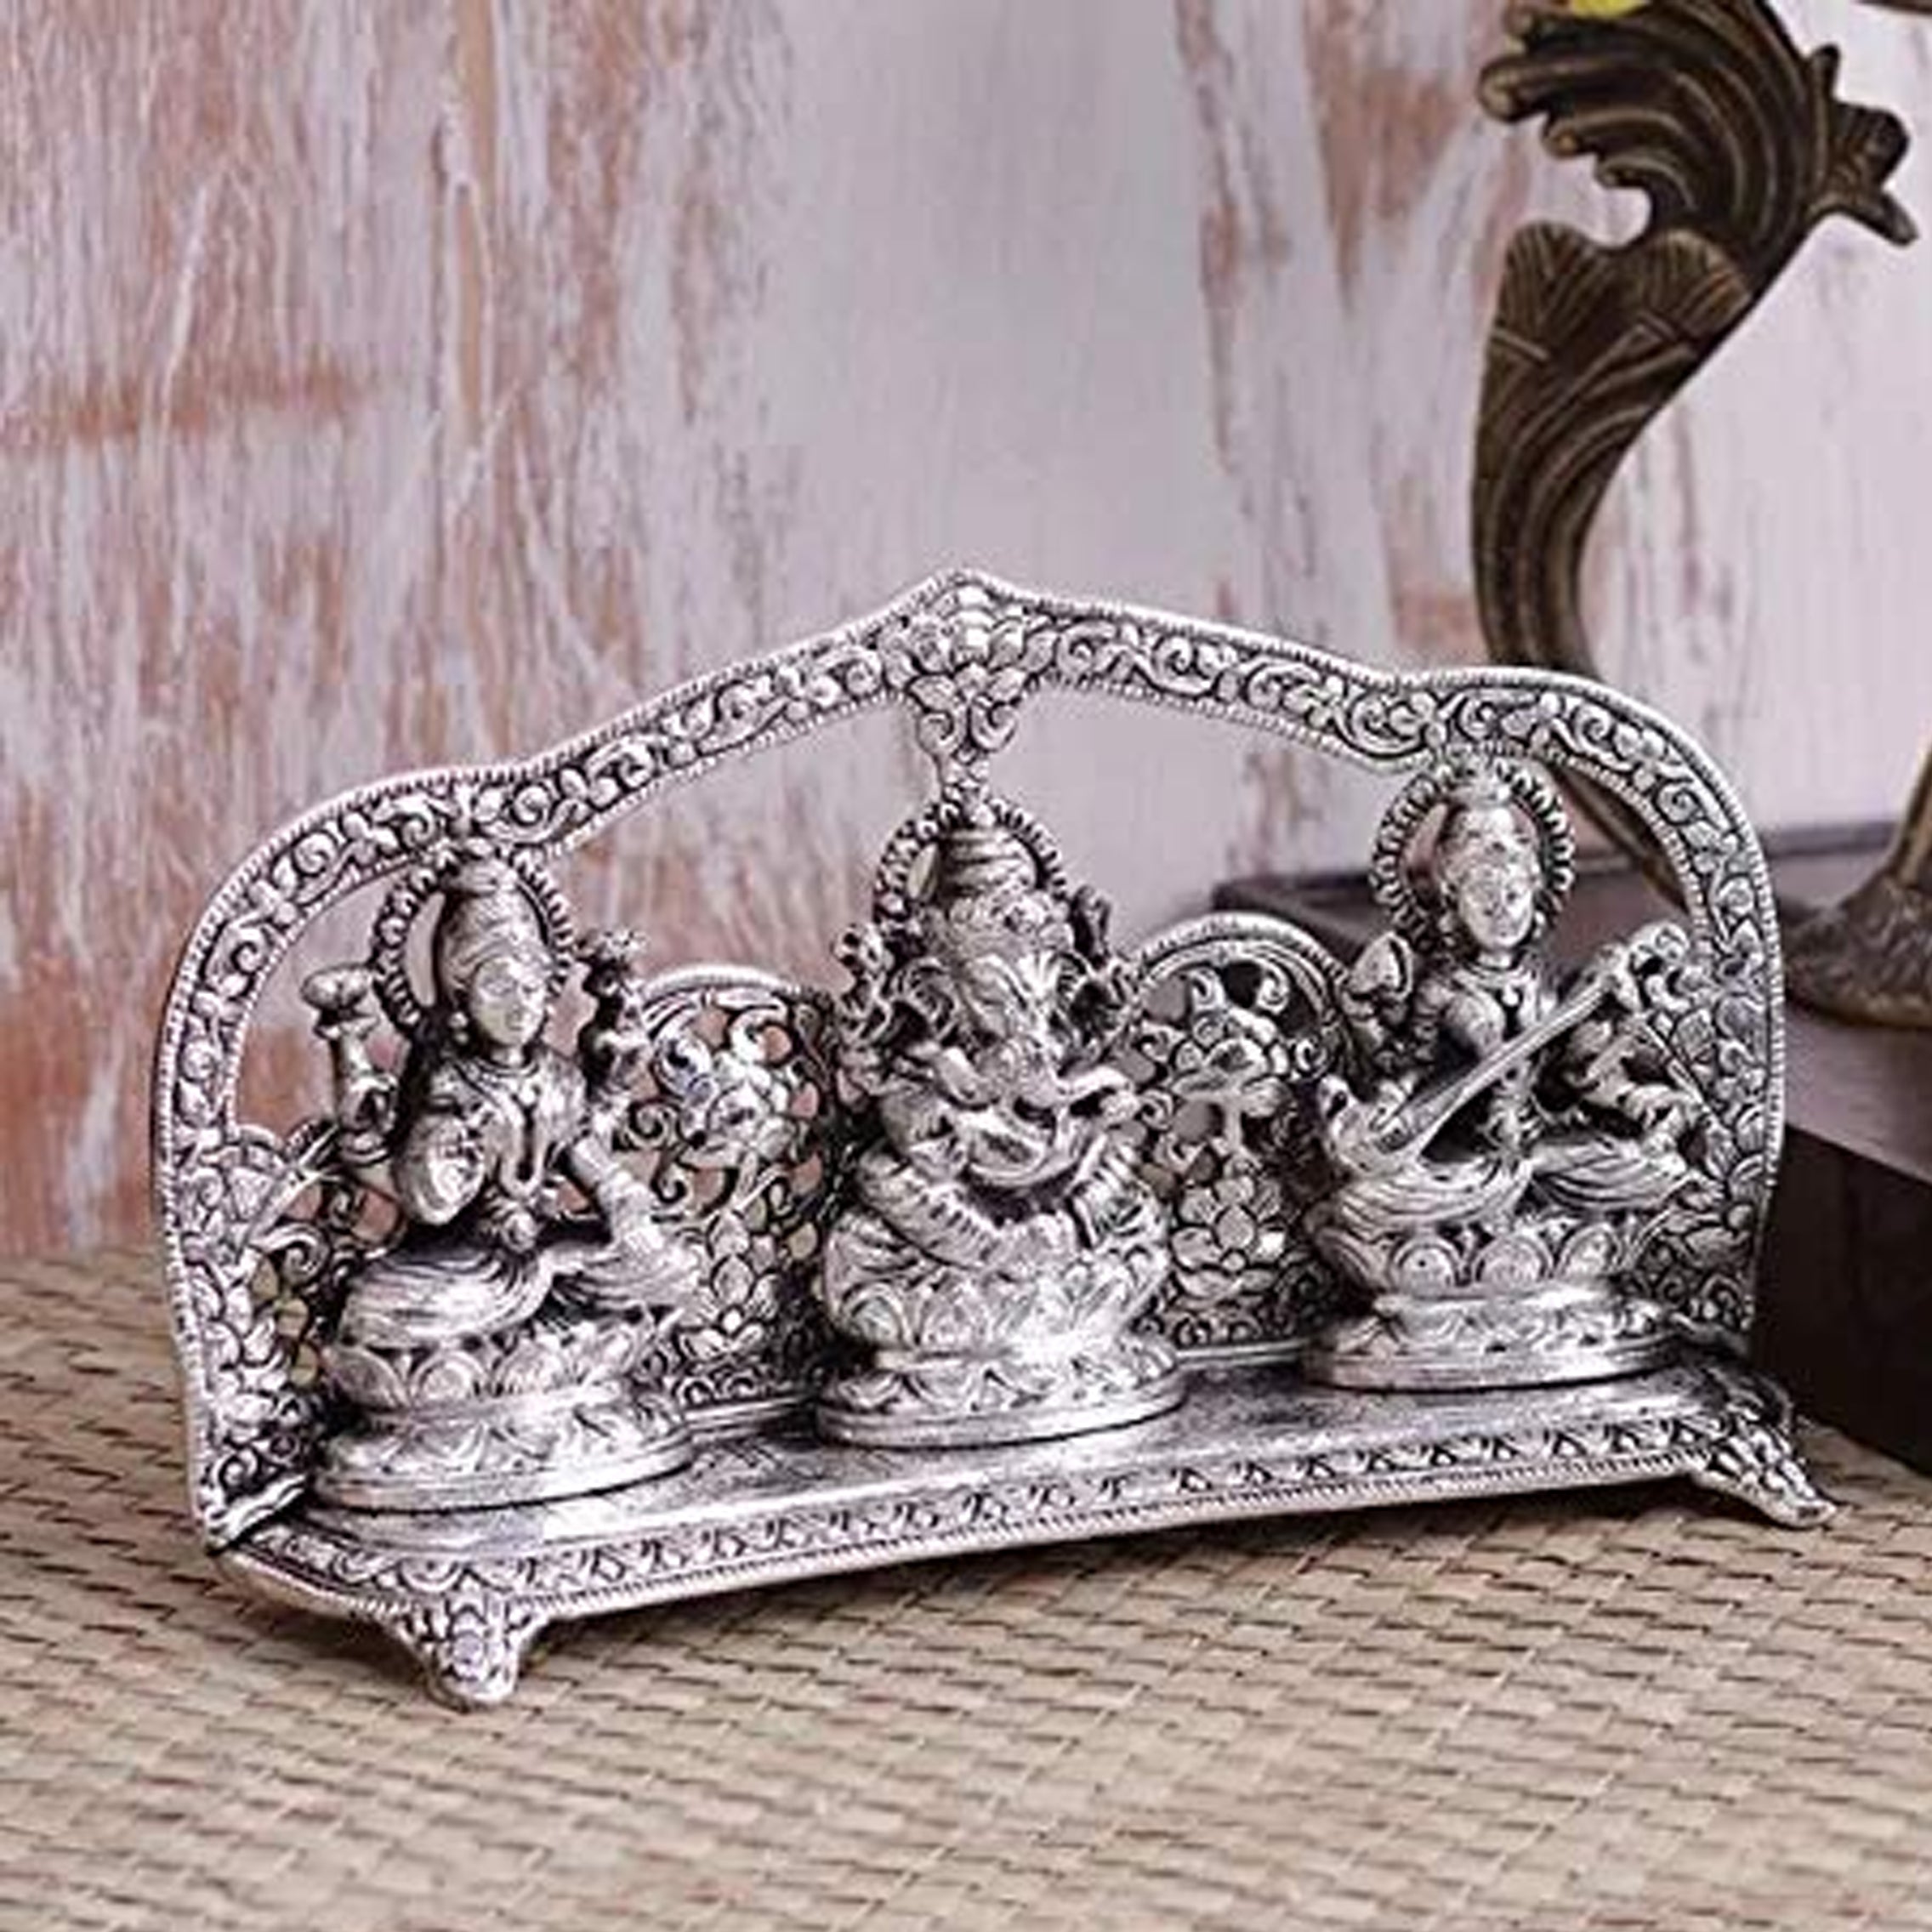 Aluminium Laxmi Ganesha Saraswati Idol, Standard